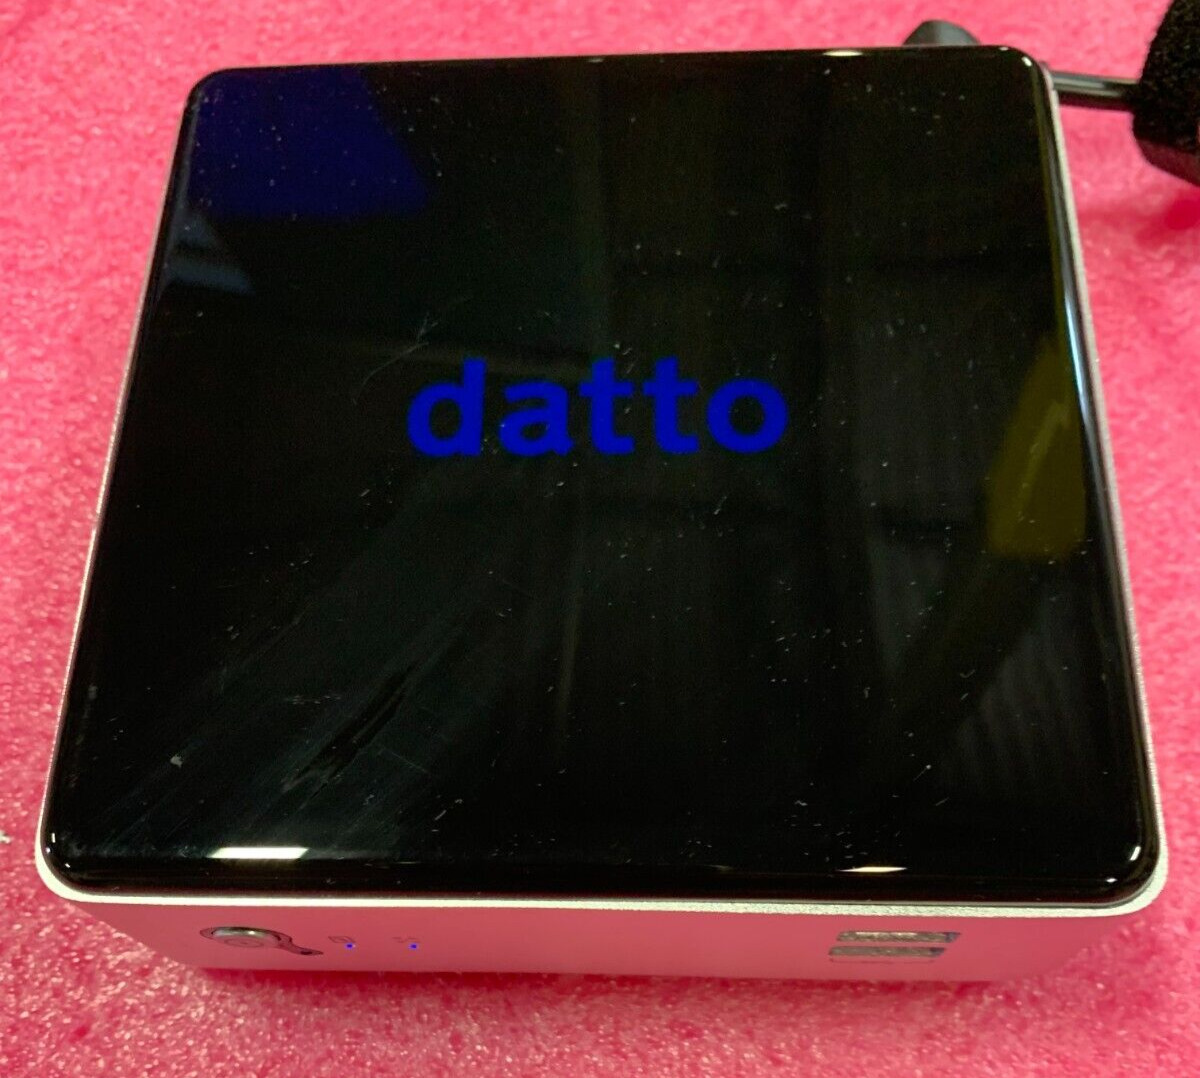 DATTO-1000 Mini PC Micro Server 8GB RAM